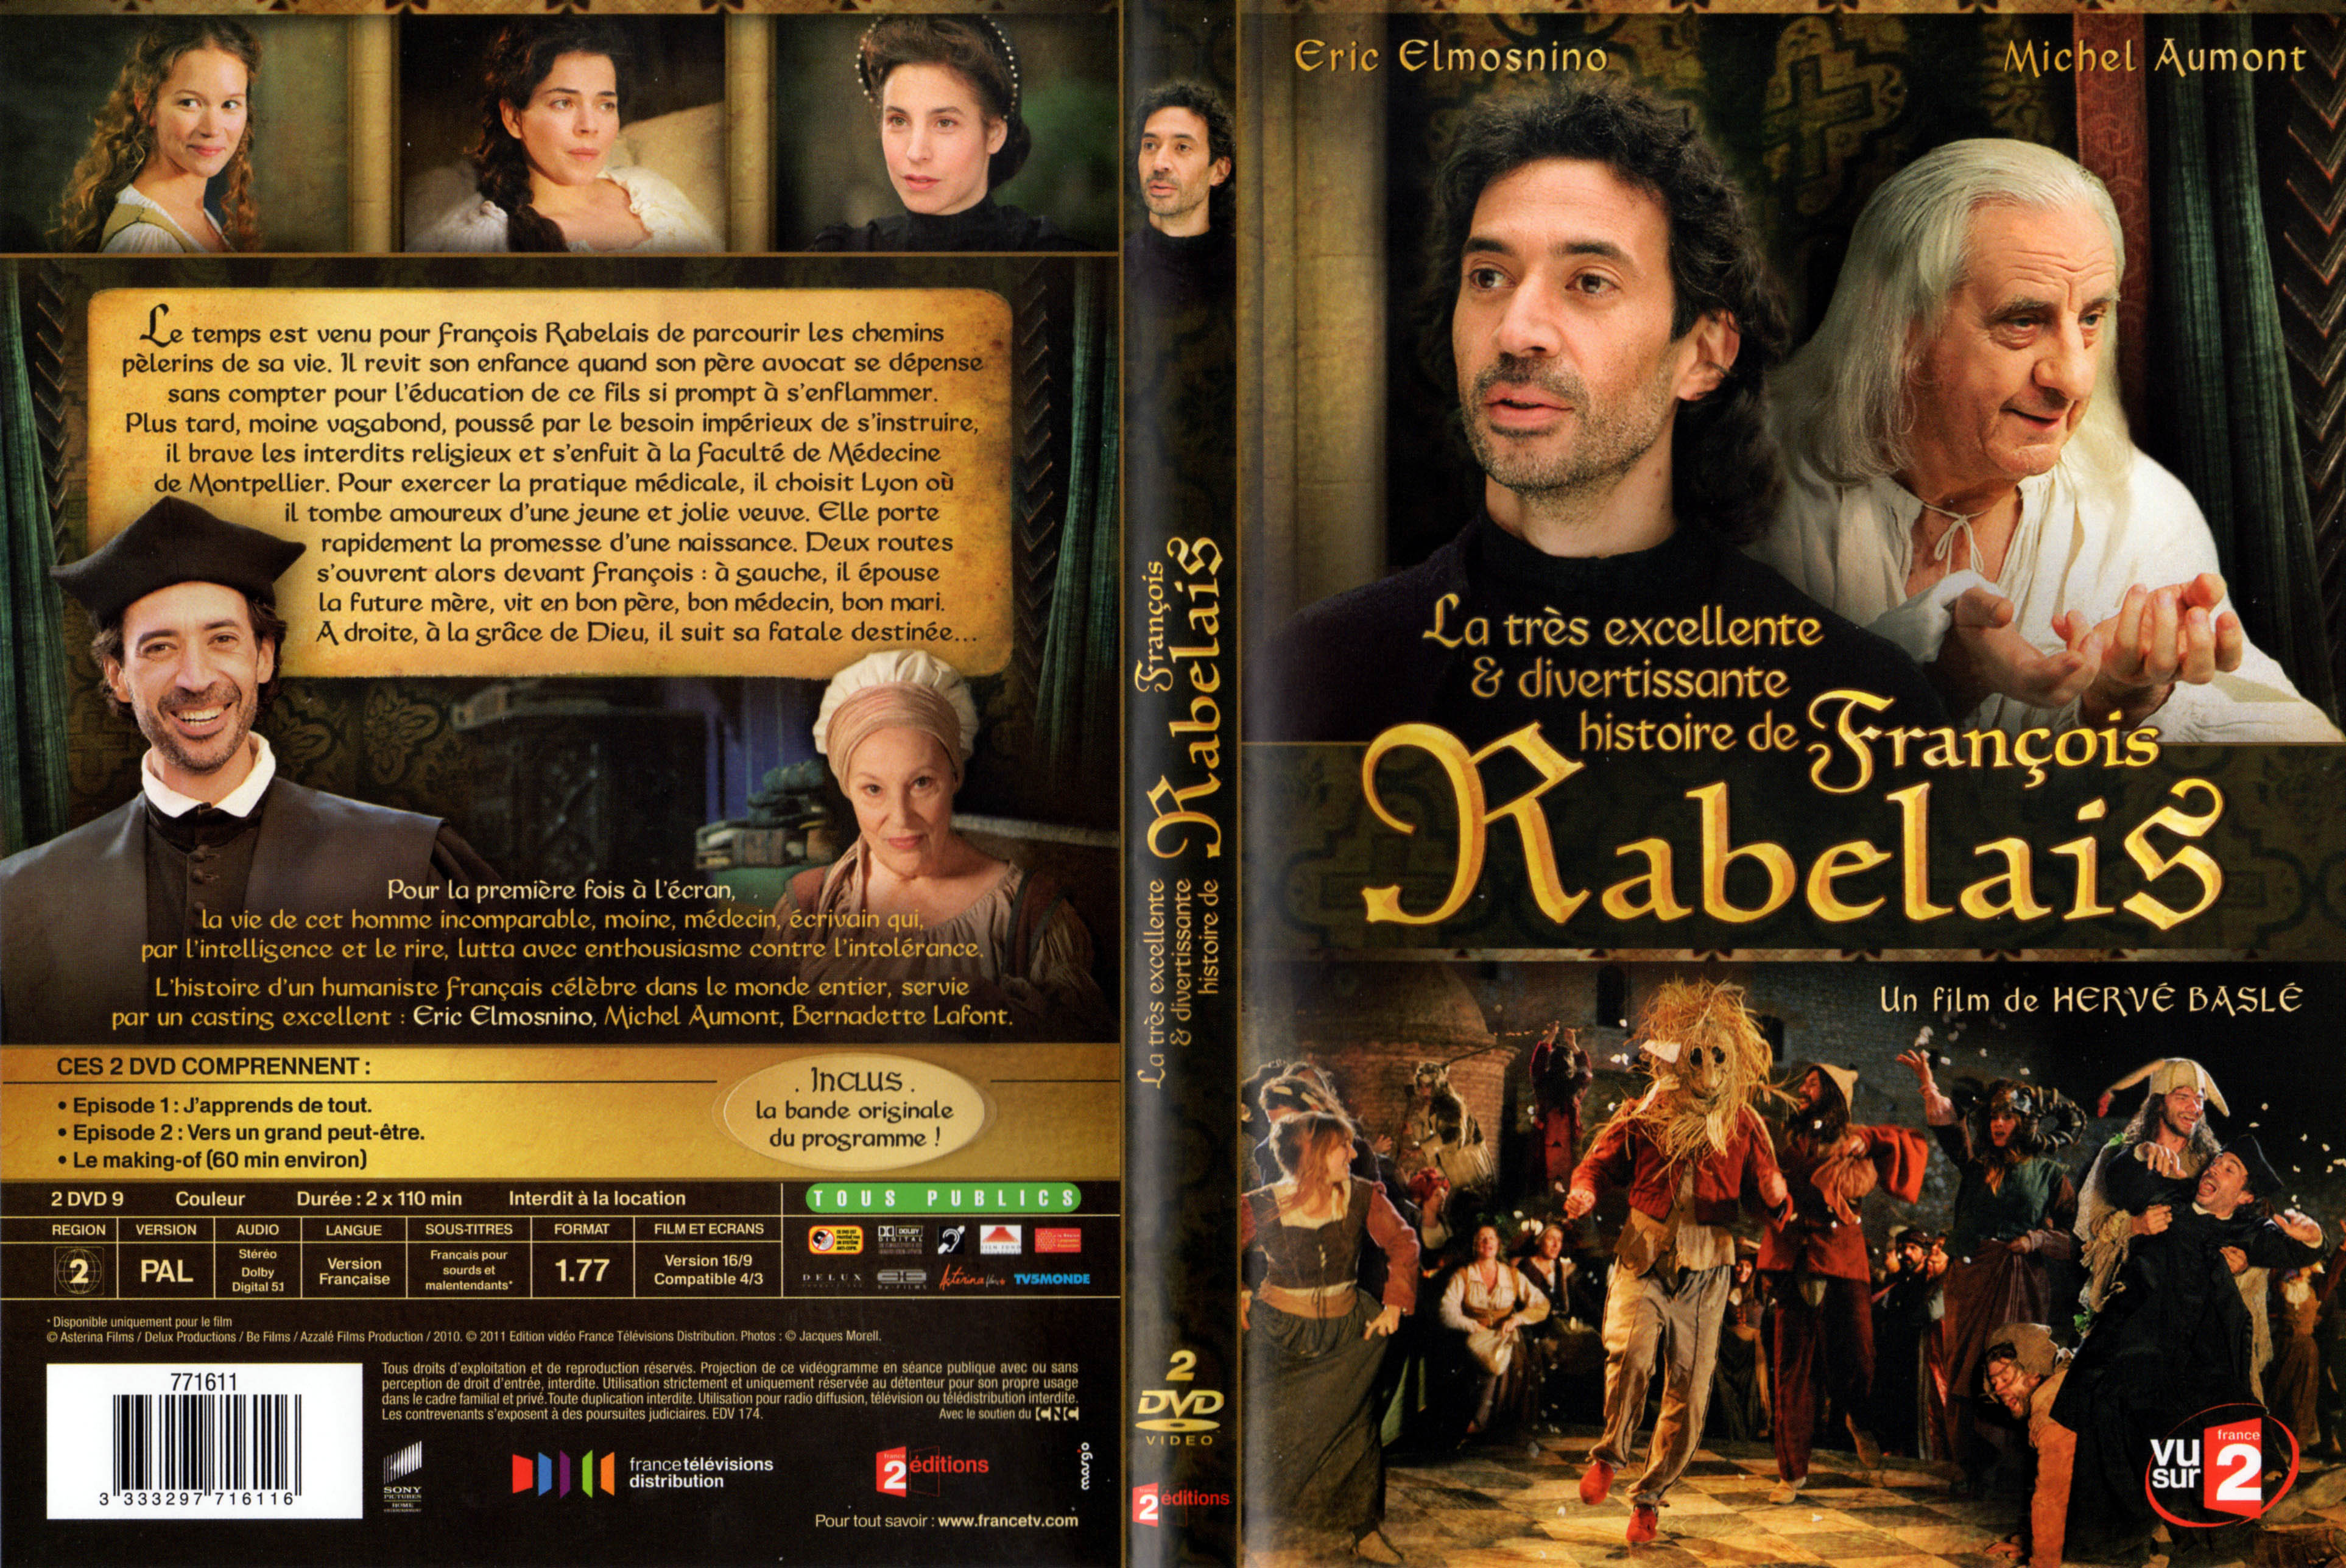 Jaquette DVD La tres excellente et divertissante histoire de Francois Rabelais